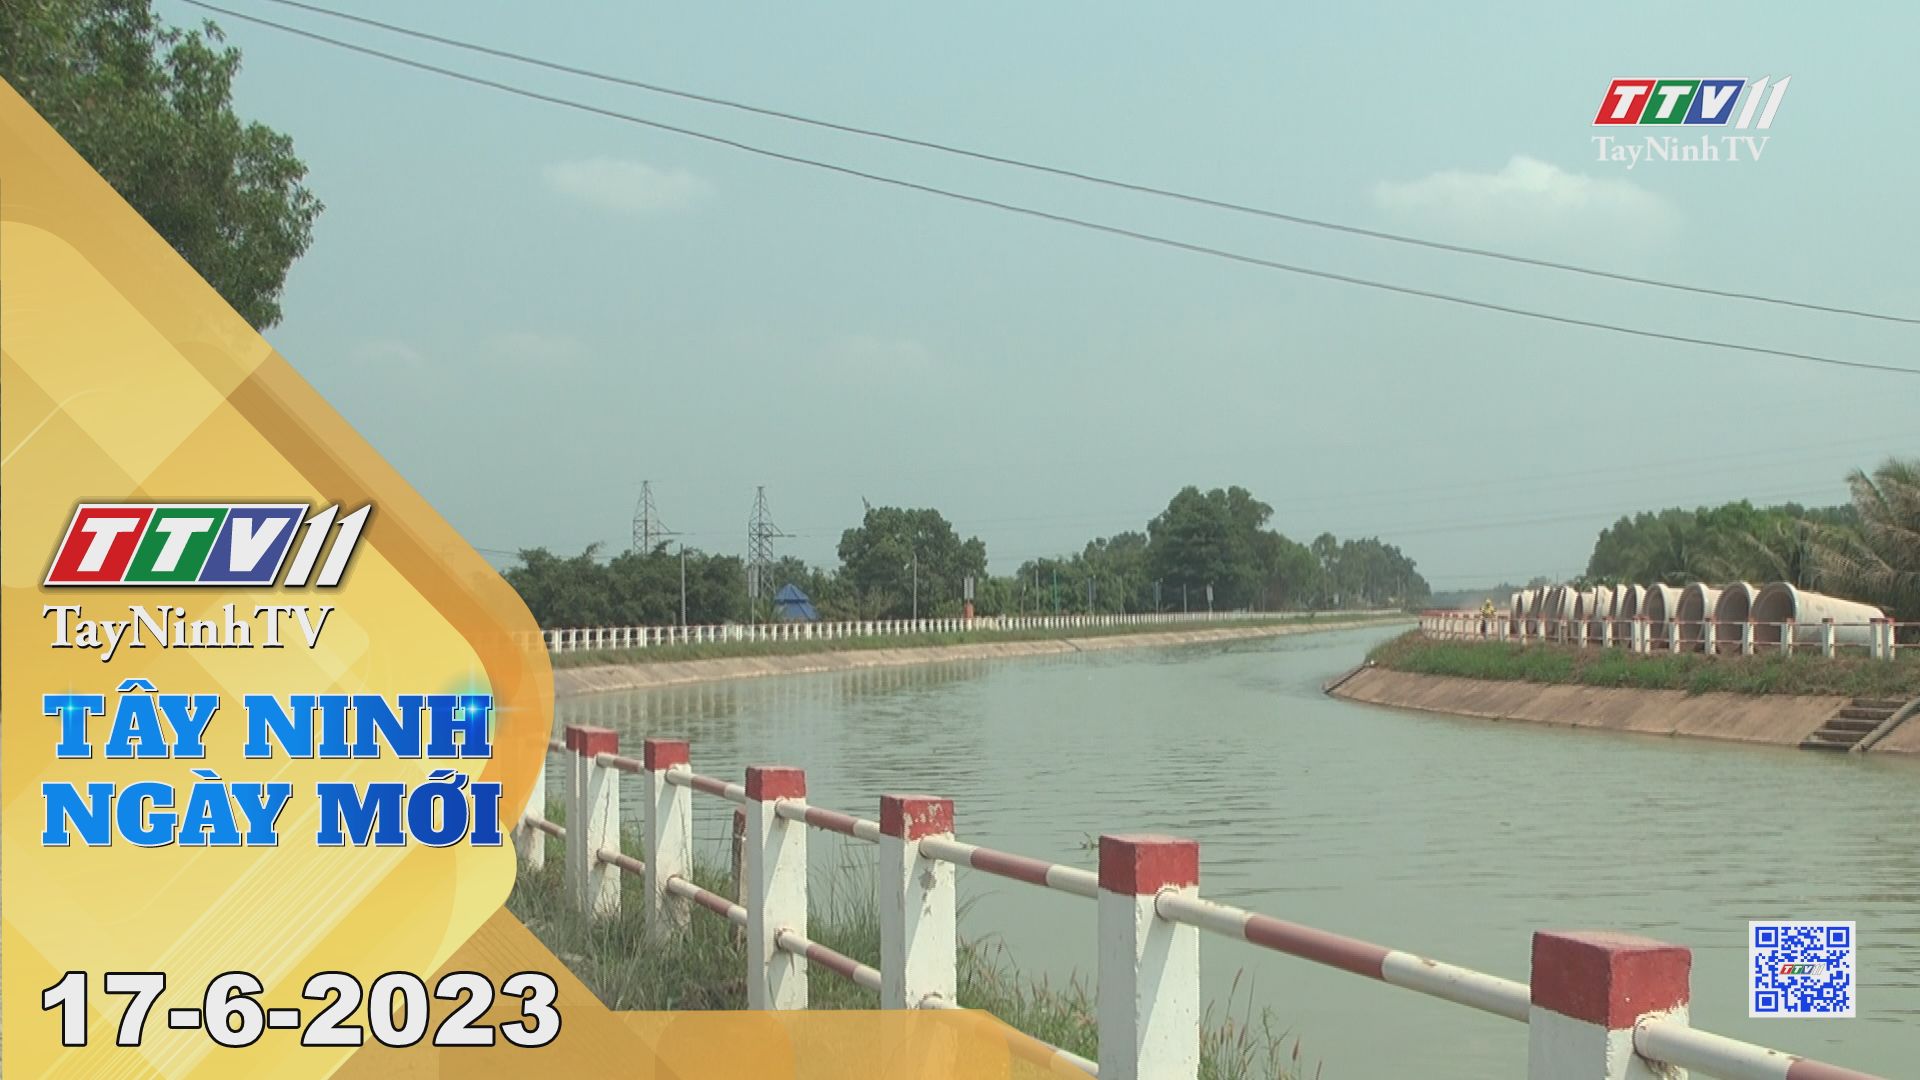 Tây Ninh ngày mới 17-6-2023 | Tin tức hôm nay | TayNinhTV